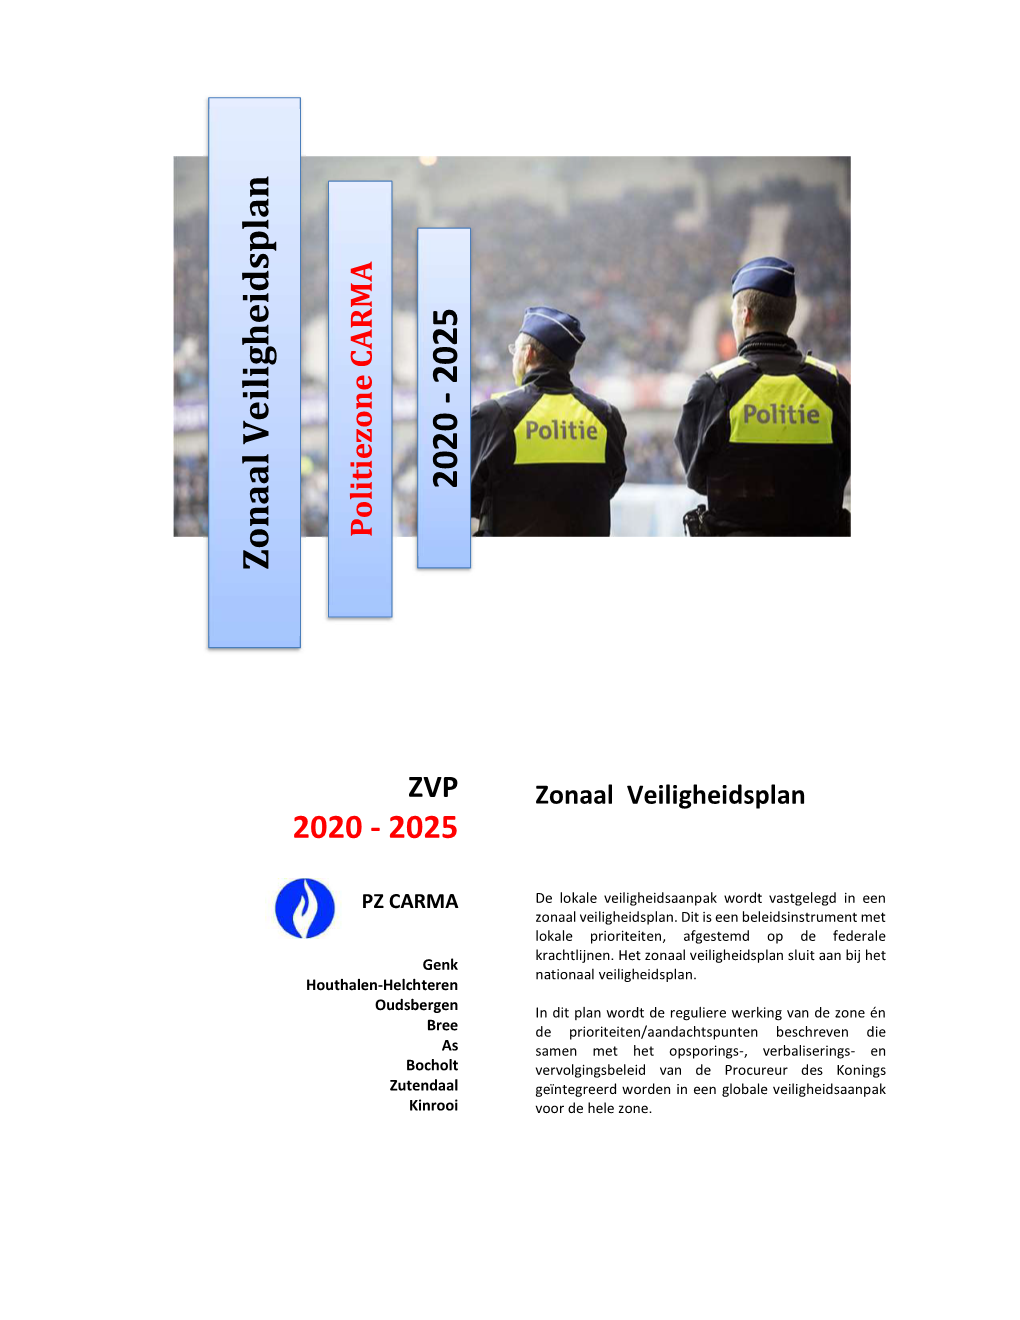 Zonaal Veiligheidsplan 2020-2025